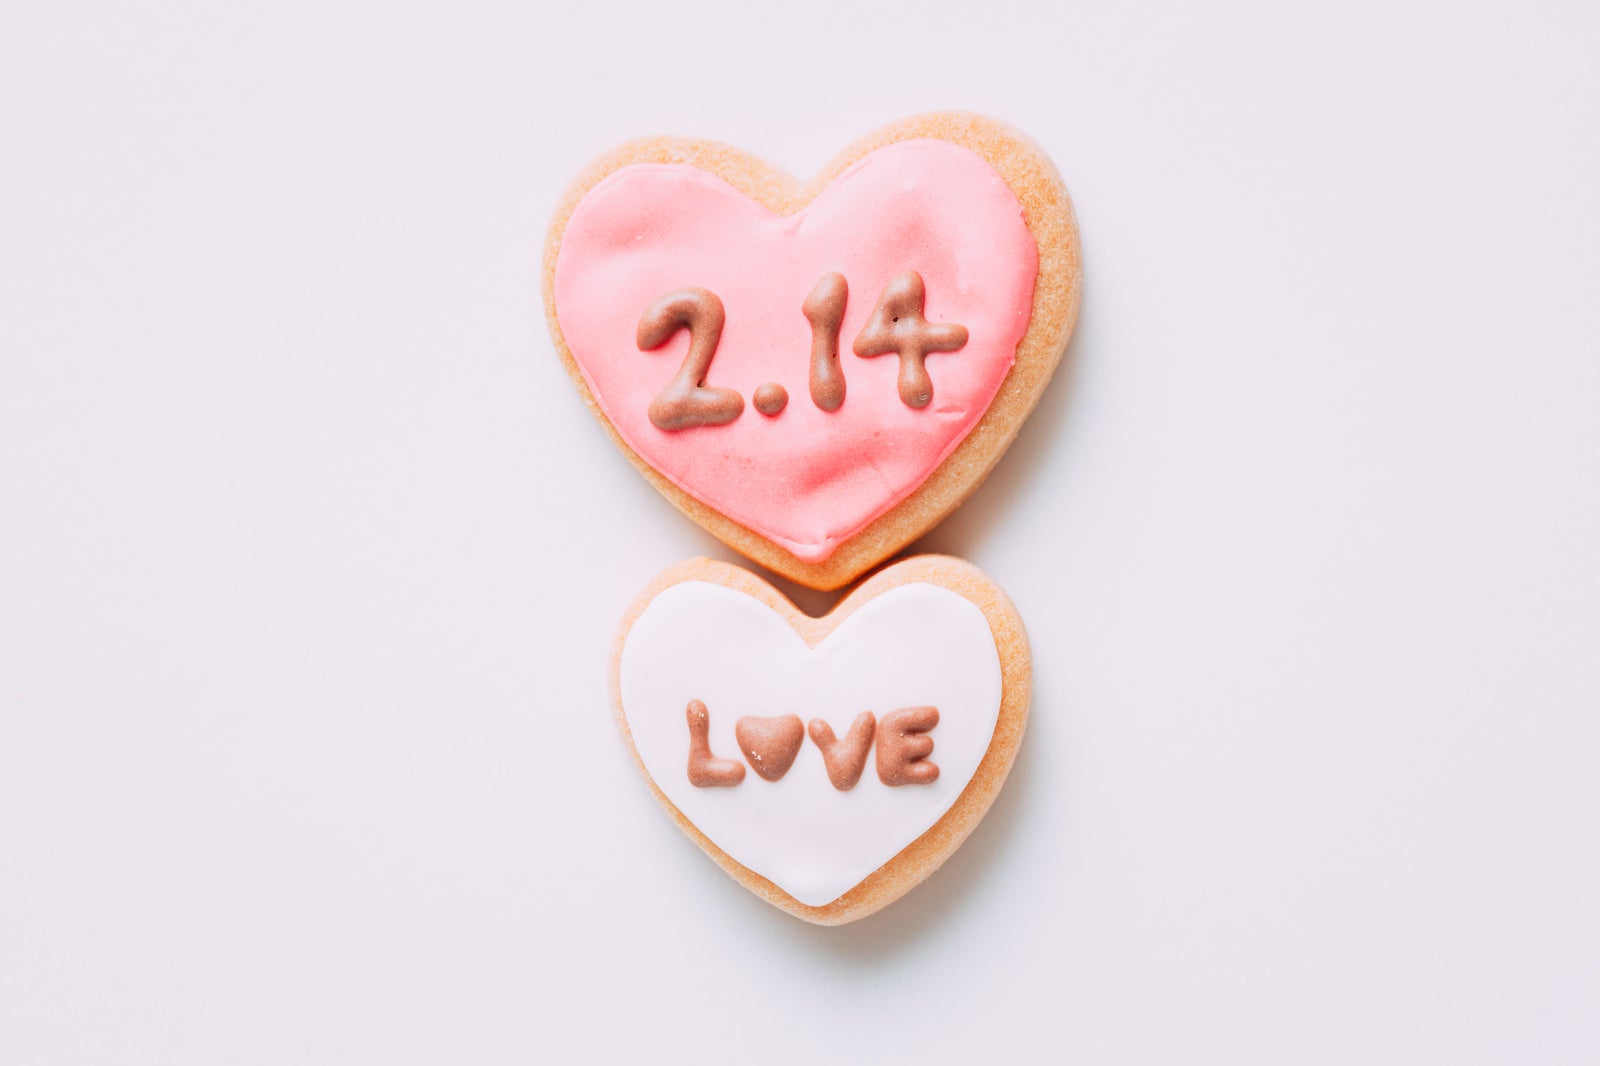 「2.14 LOVE バレンタイン」の写真